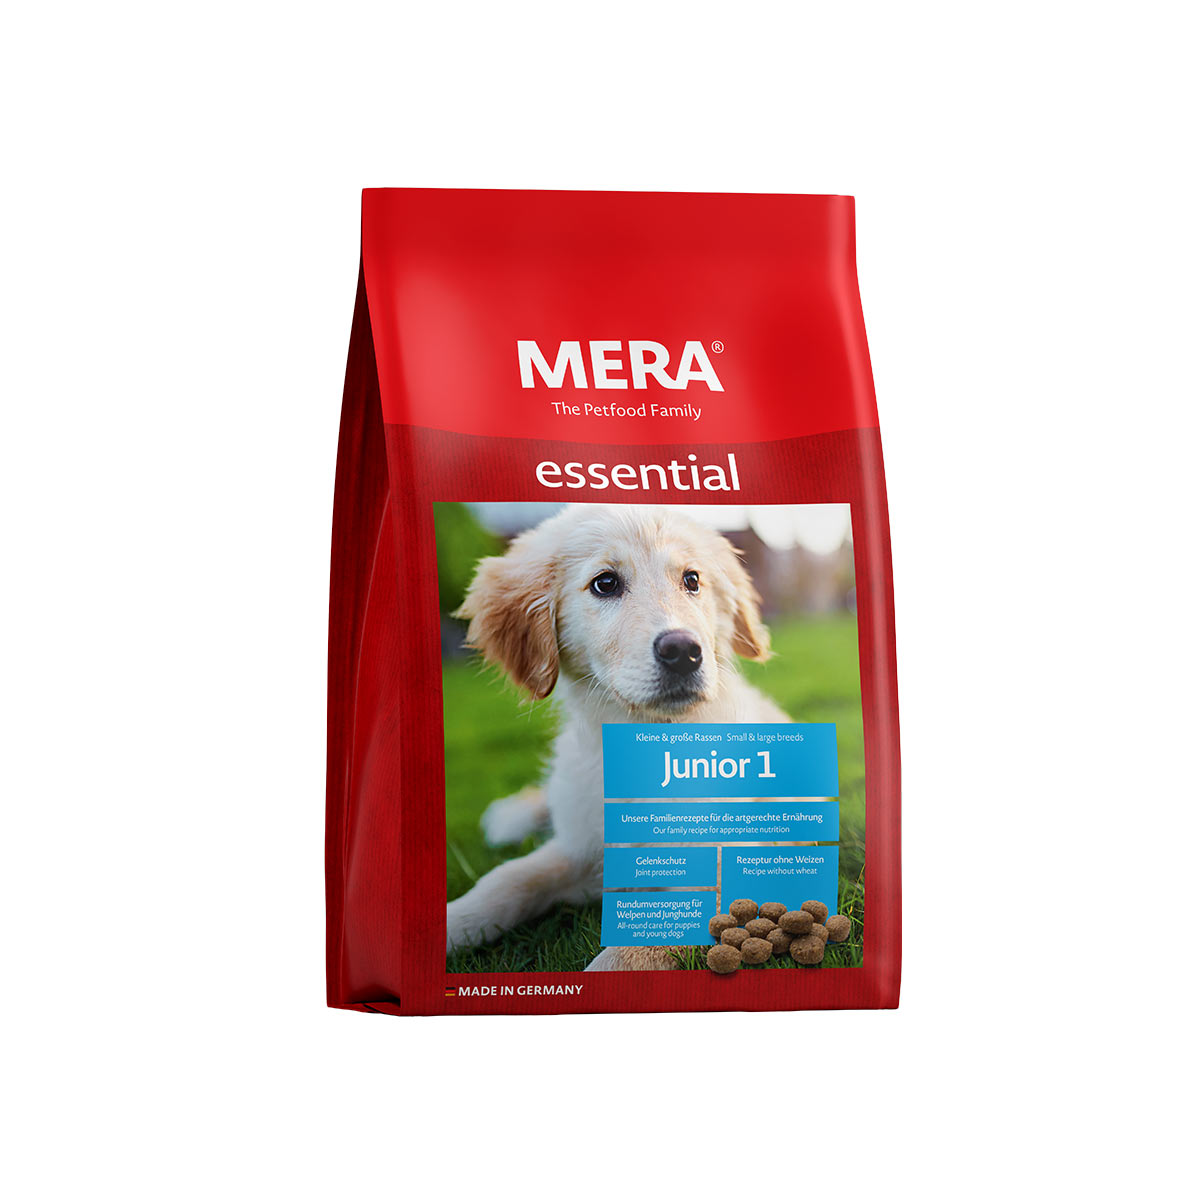 MERA essential Junior 1 12,5 kg